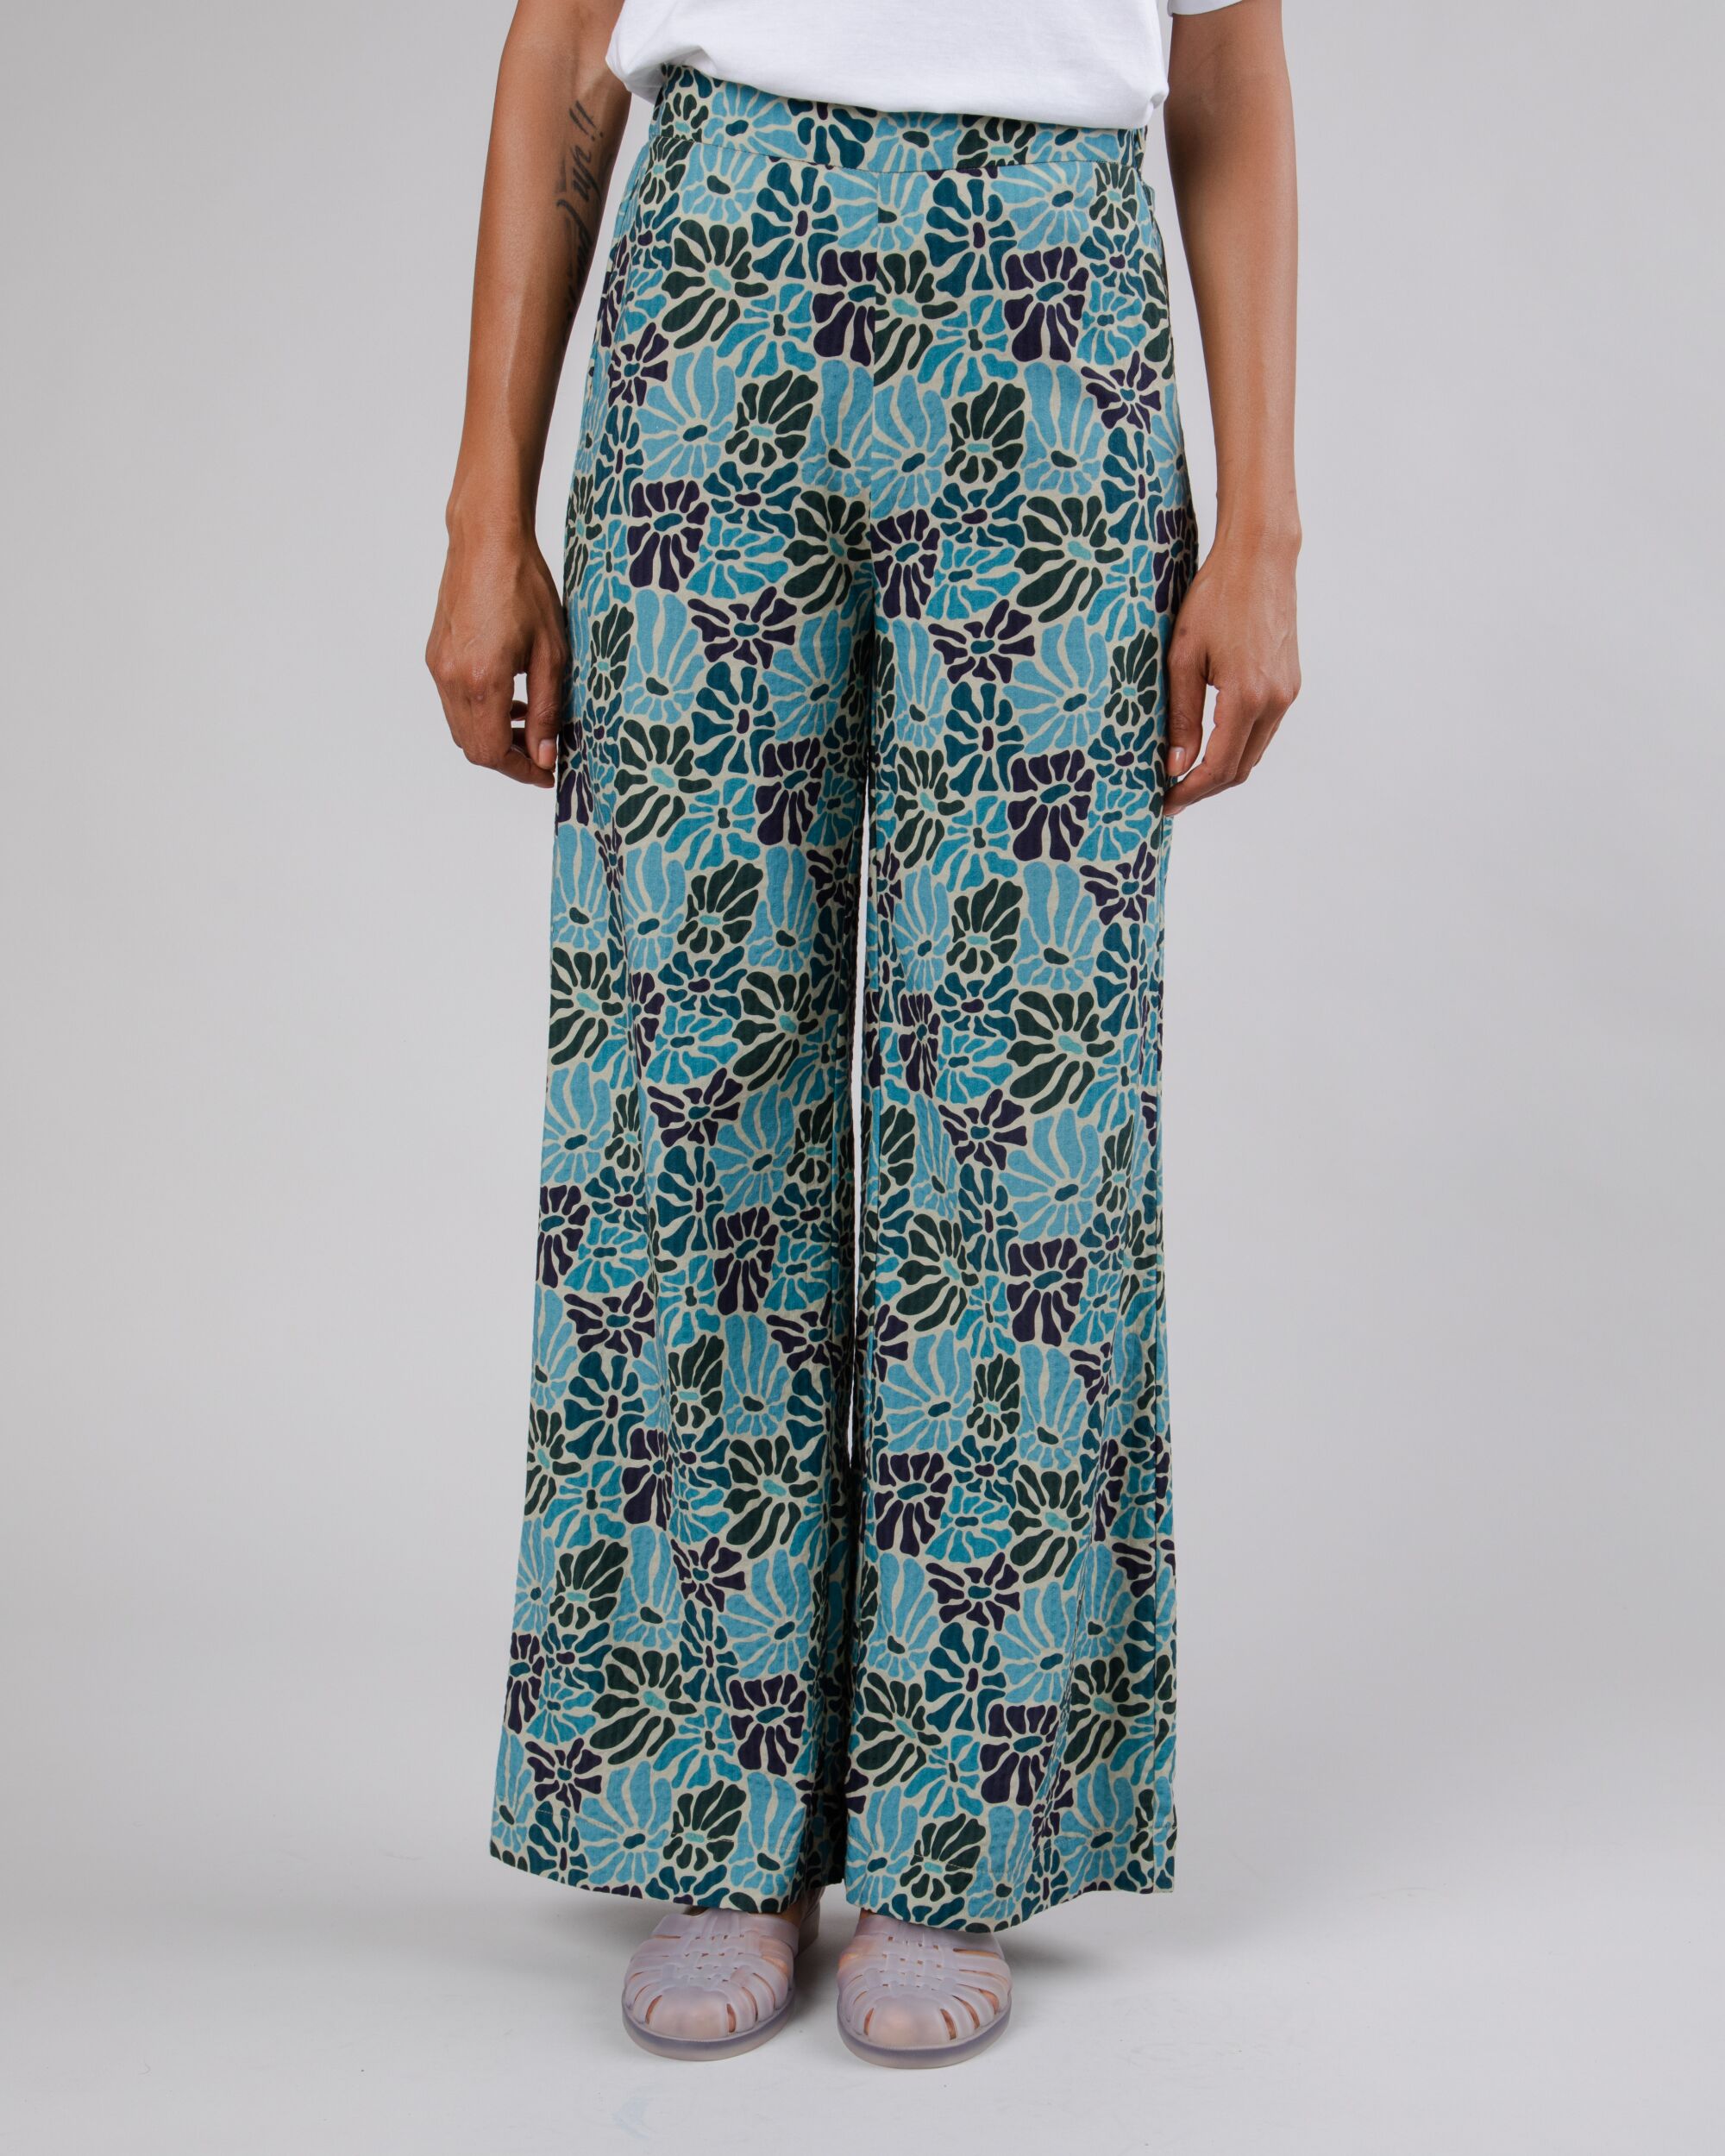 Pantalon large et coloré Spring en coton de Brava Fabrics